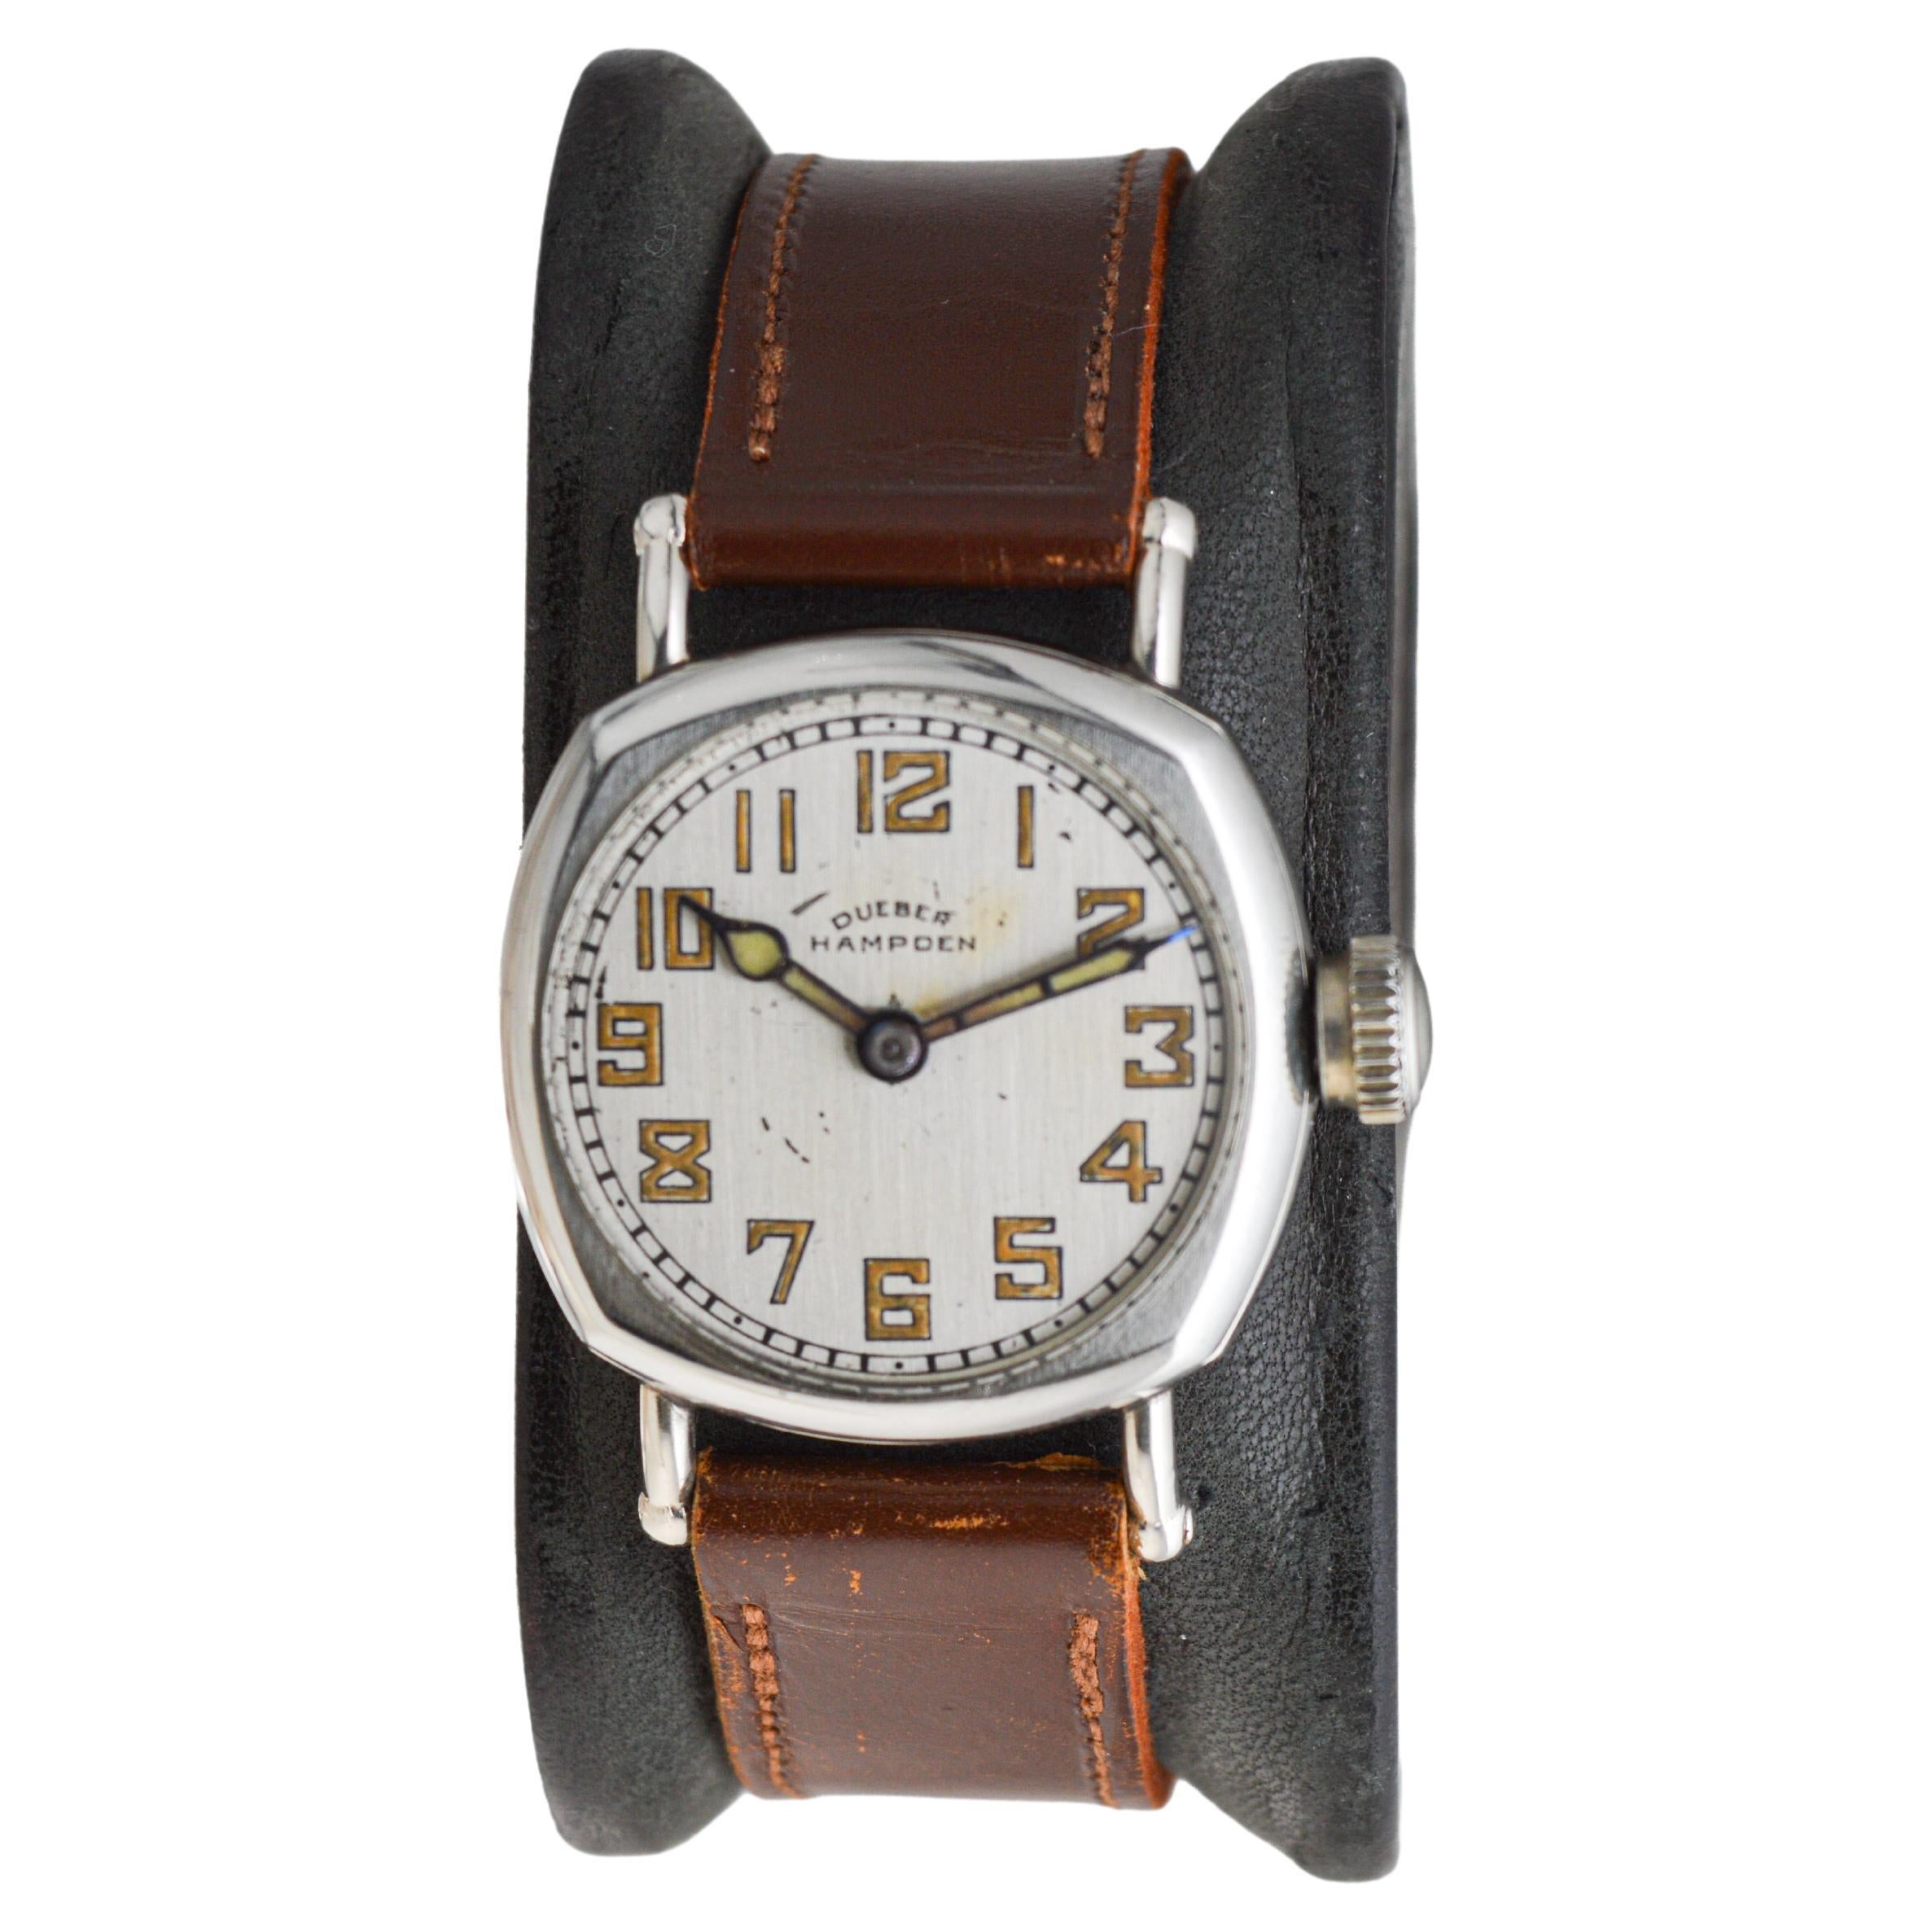 Dueber Hampden Neusilber-Uhr mit Original-Zifferblatt, -Zeigern und -Armband um 1920